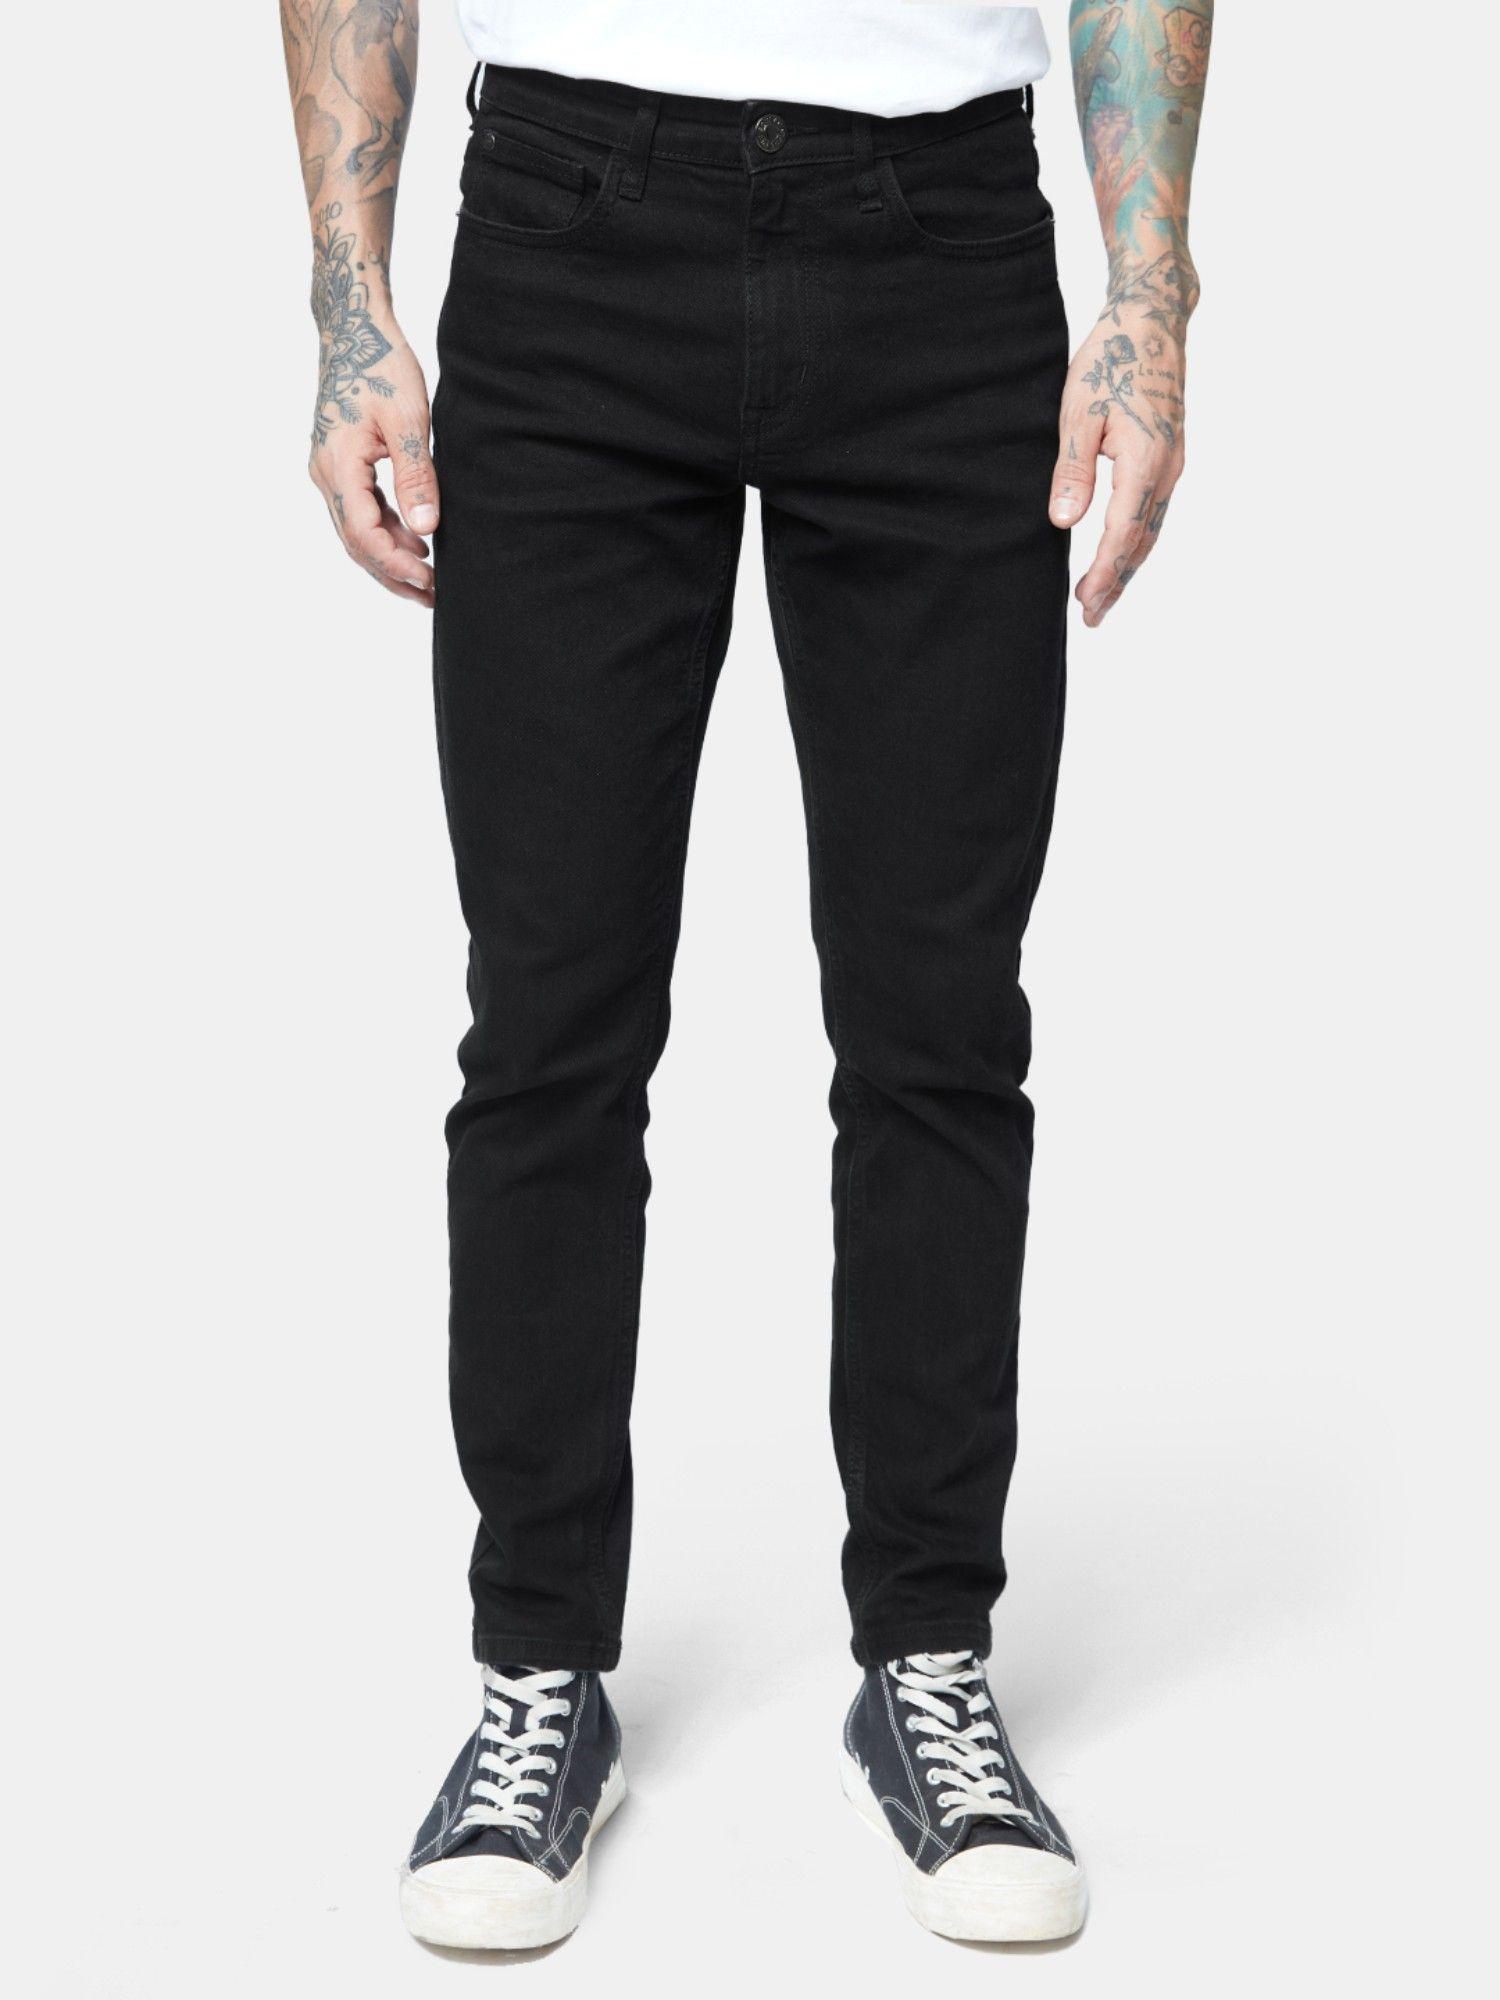 solid black slim fit men jeans